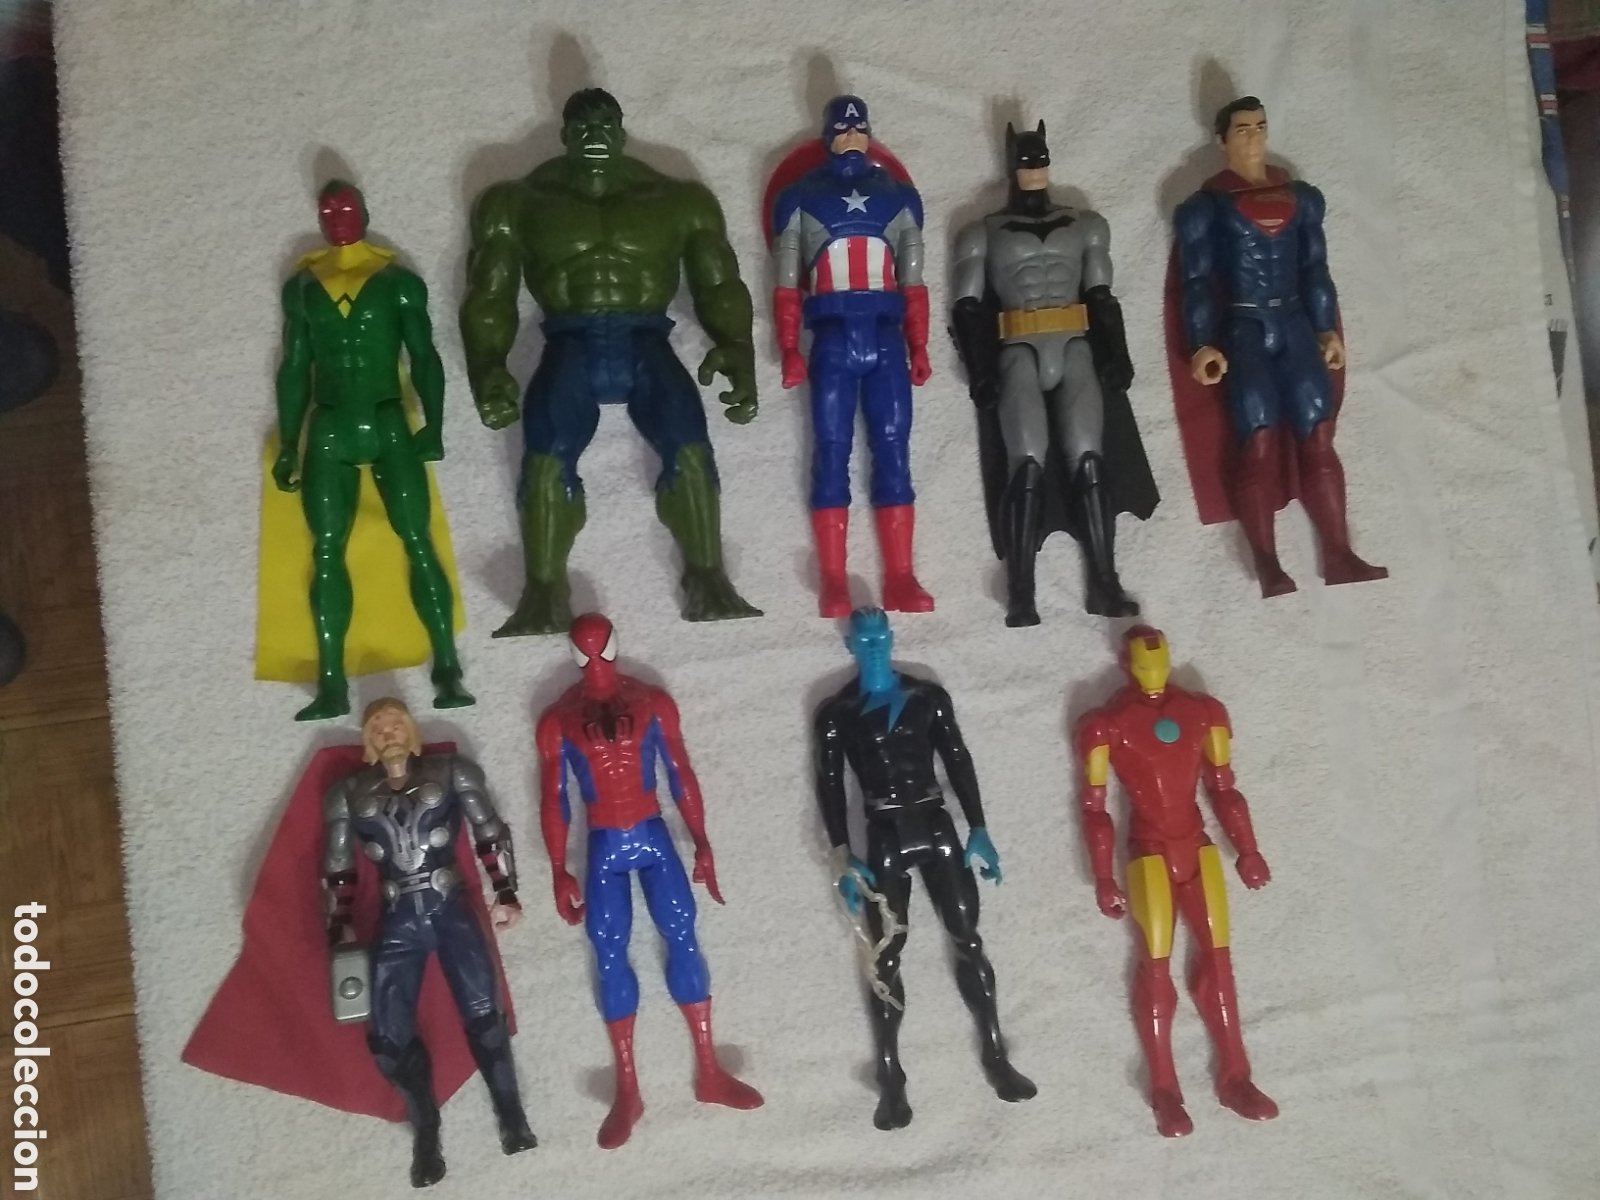 lote 9 figuras superhéroes marvel / dc comics ( - Compra venta en  todocoleccion